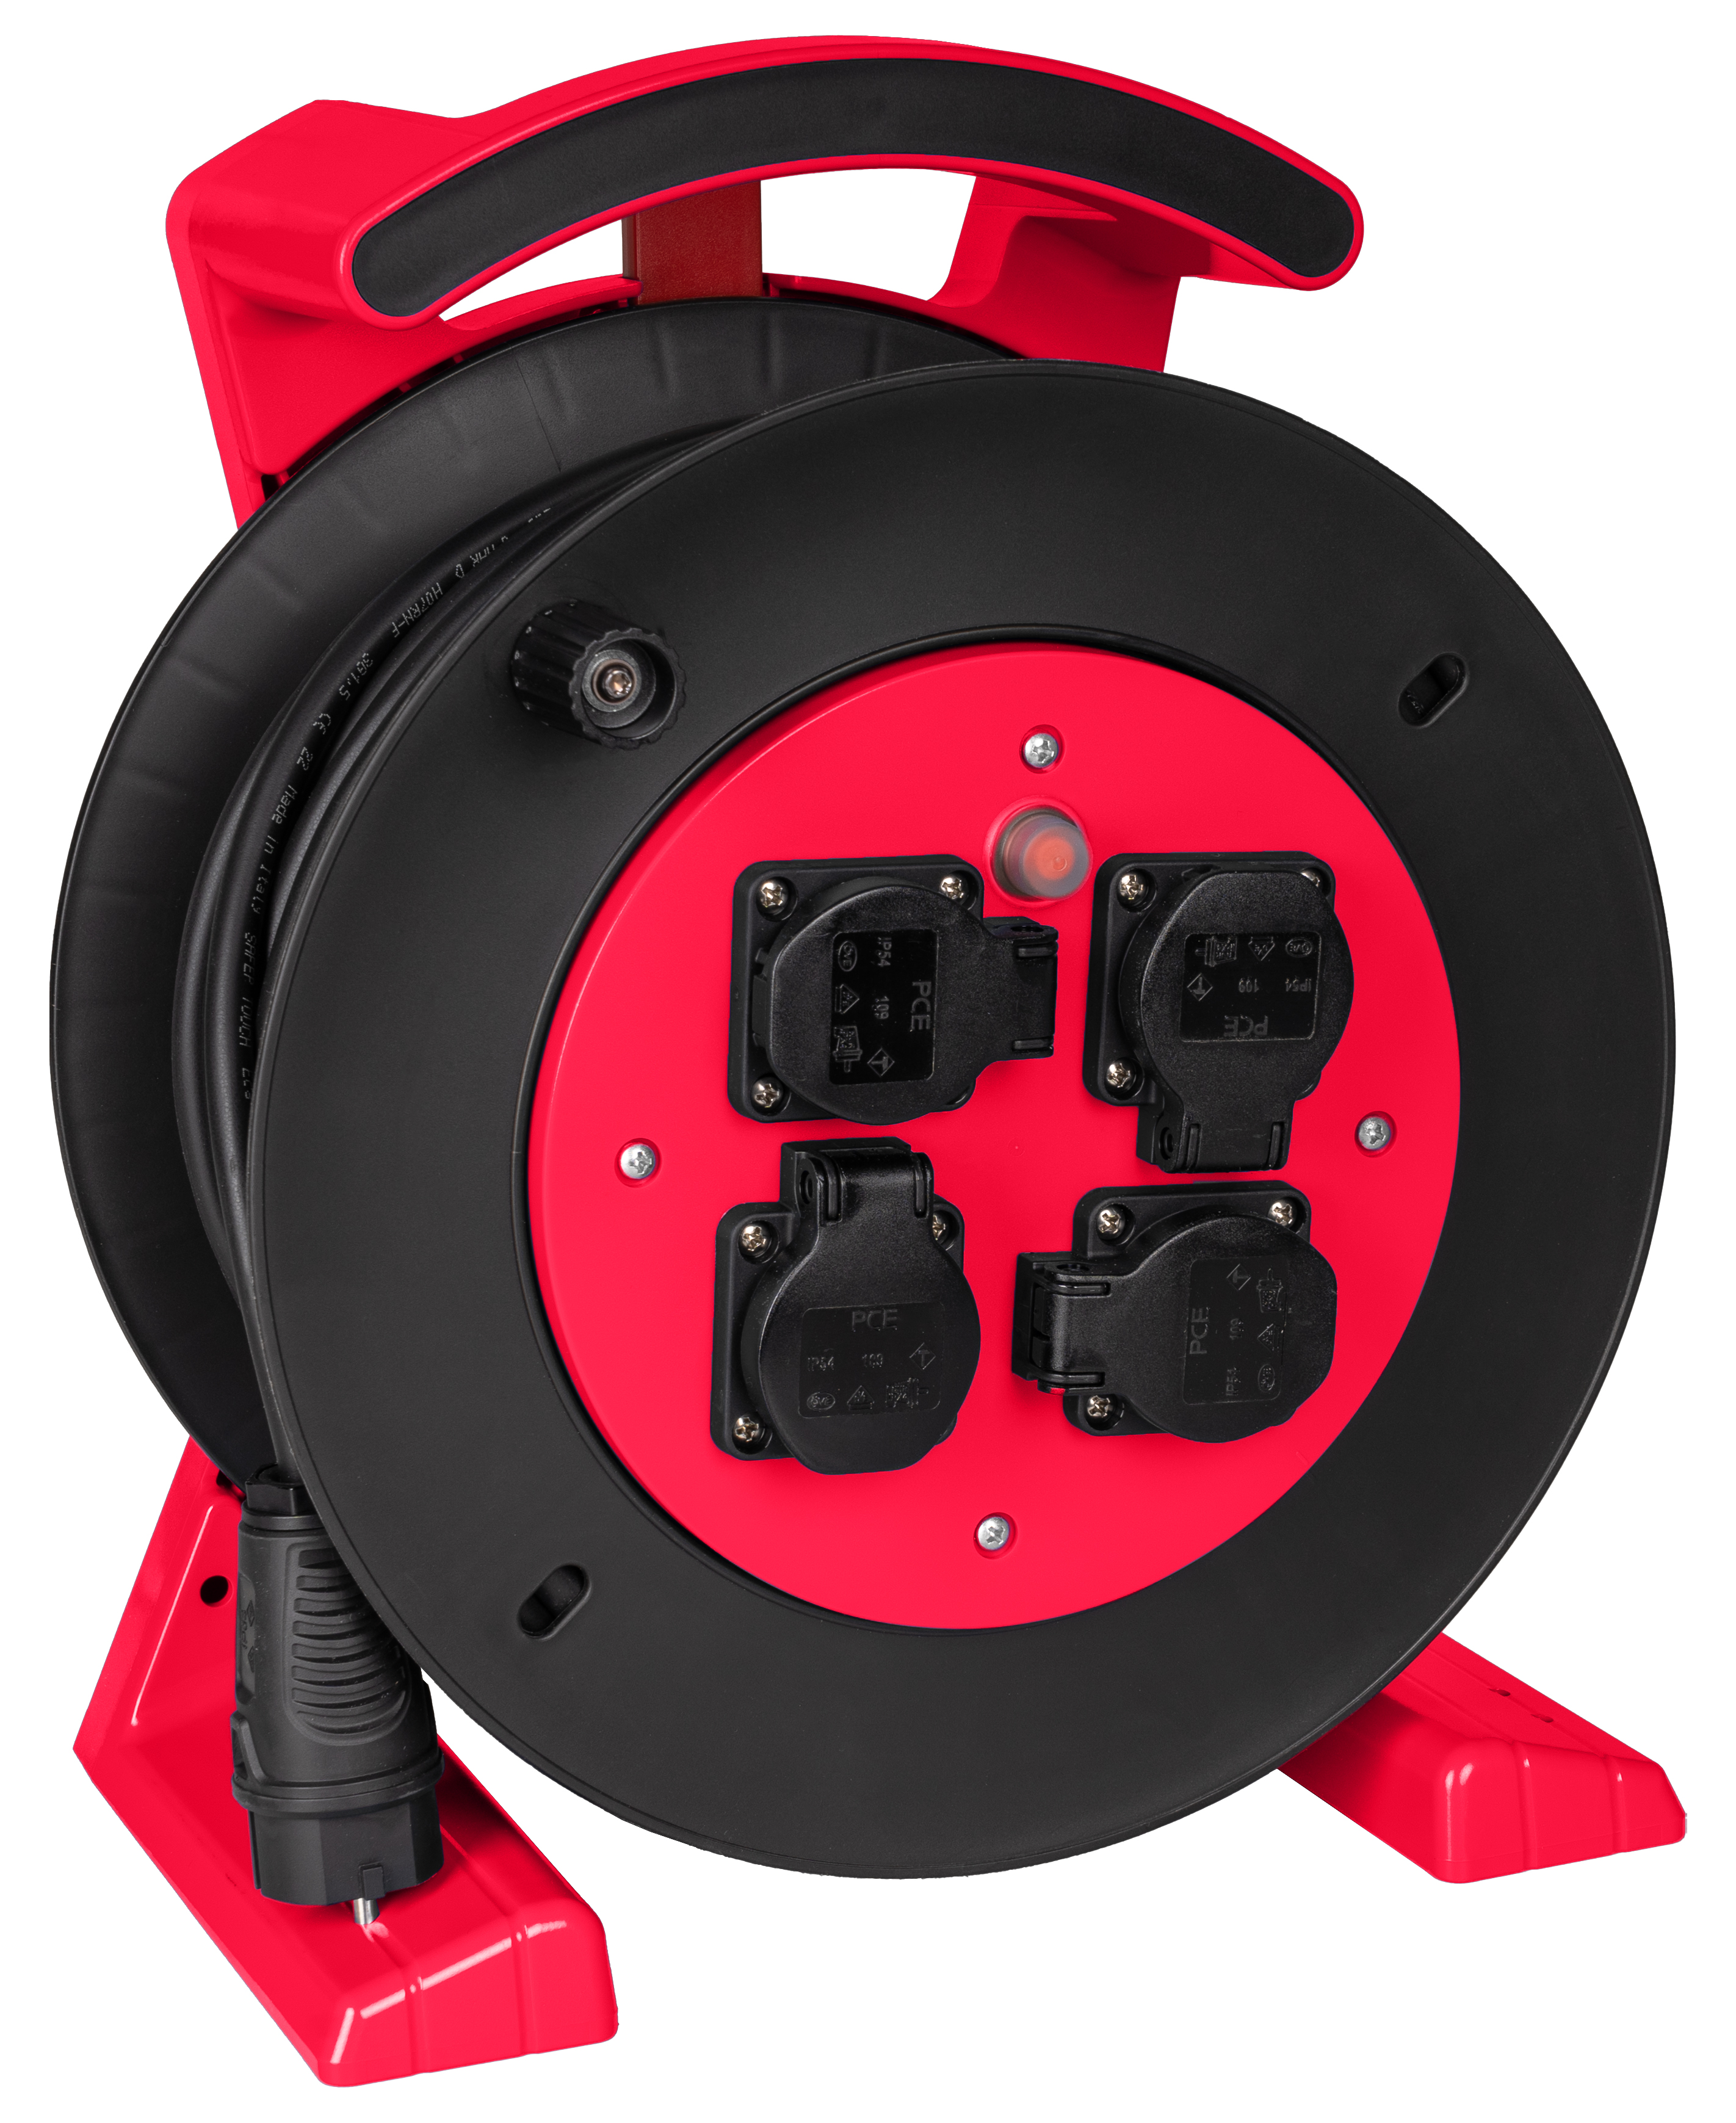 JUMBO kabelhaspel 2.0 in rood-zwart, 4 contactdozen, H07RN-F 3G2,5 mm², 25 m